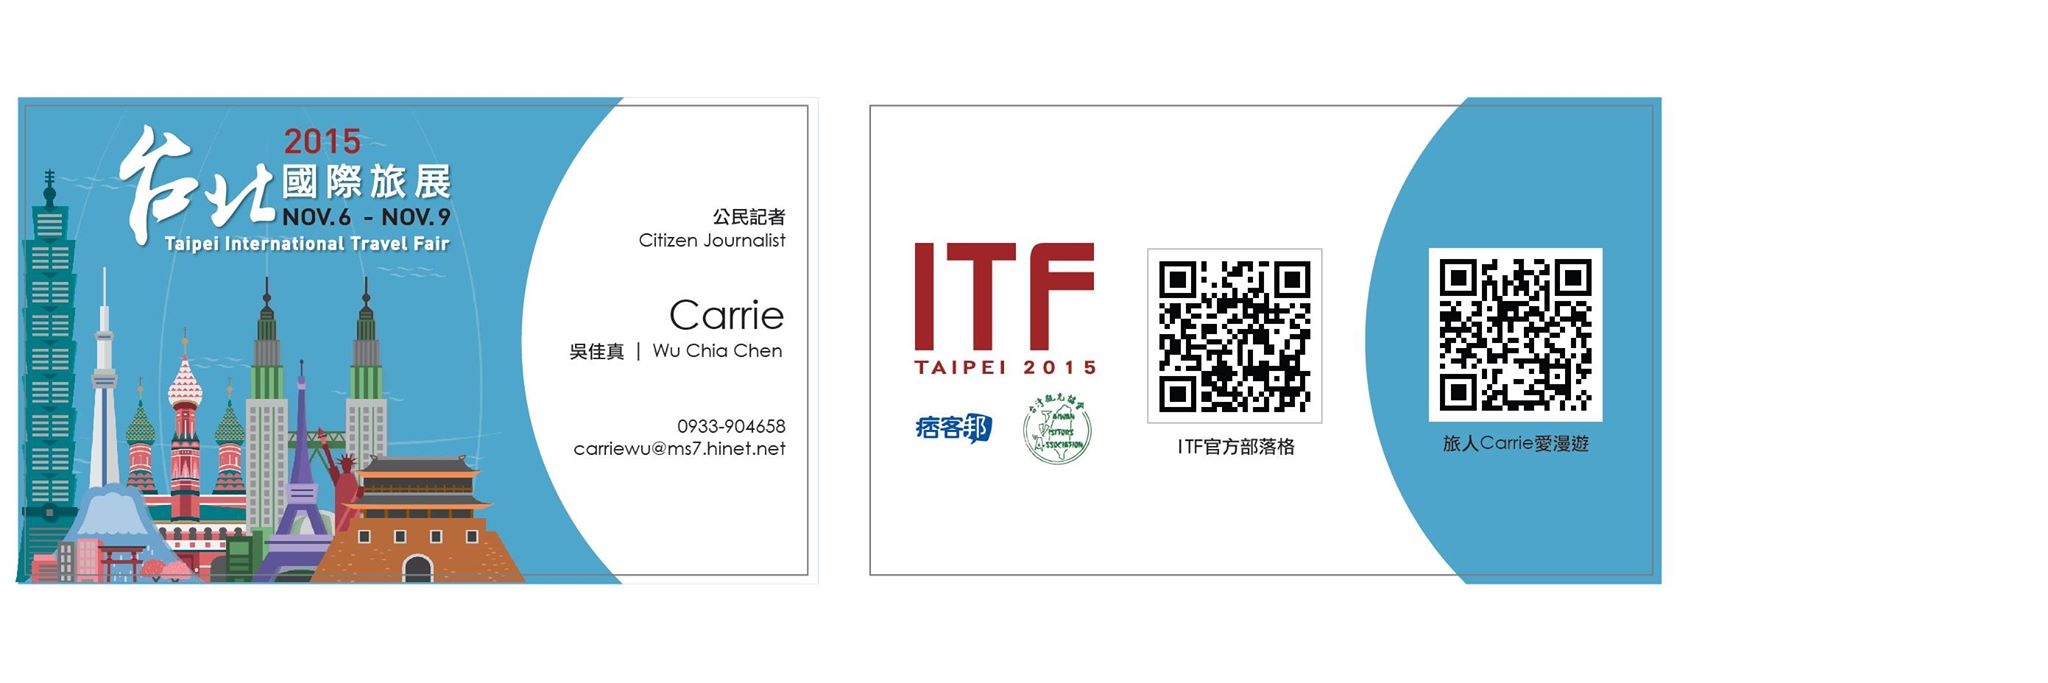 公民記者名片.jpg - 聯合報20151107(六)S6生活週報2015 ITF台北國際旅展「達人攻略」Carrie專訪